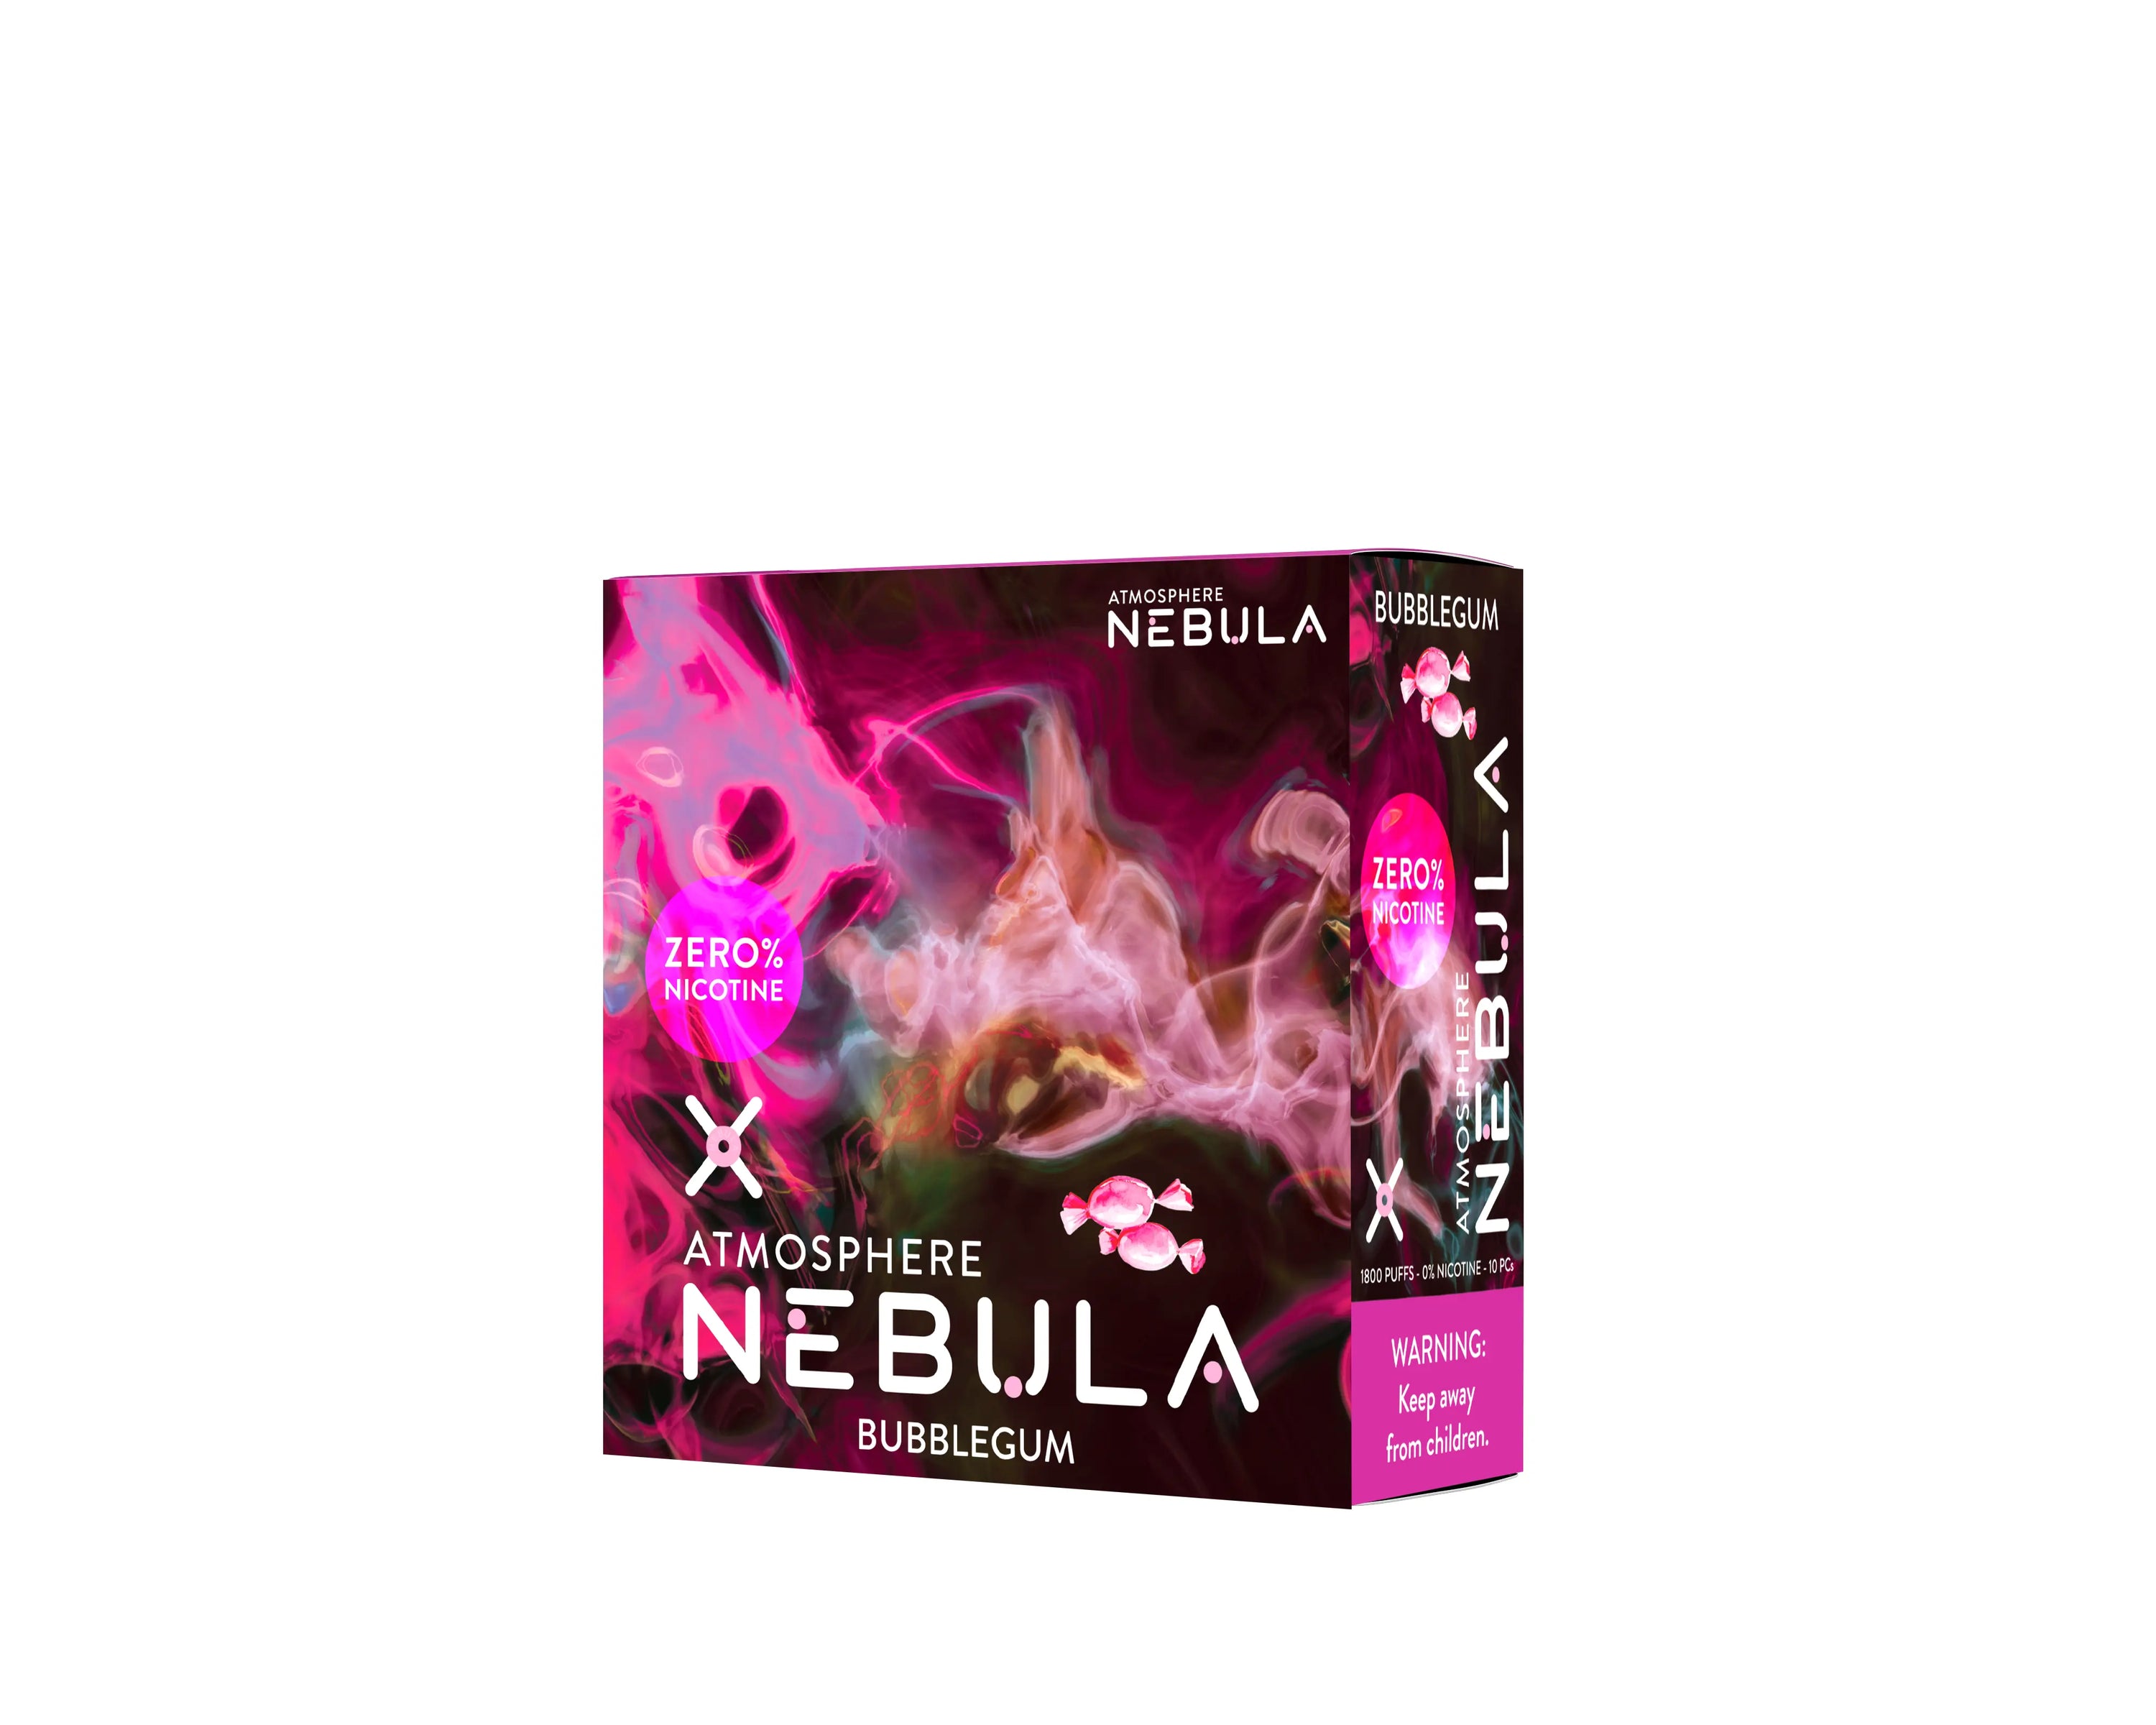 Nebula Atmosphere 0% 1800 Puffs - Bubblegum - B2B Nebula